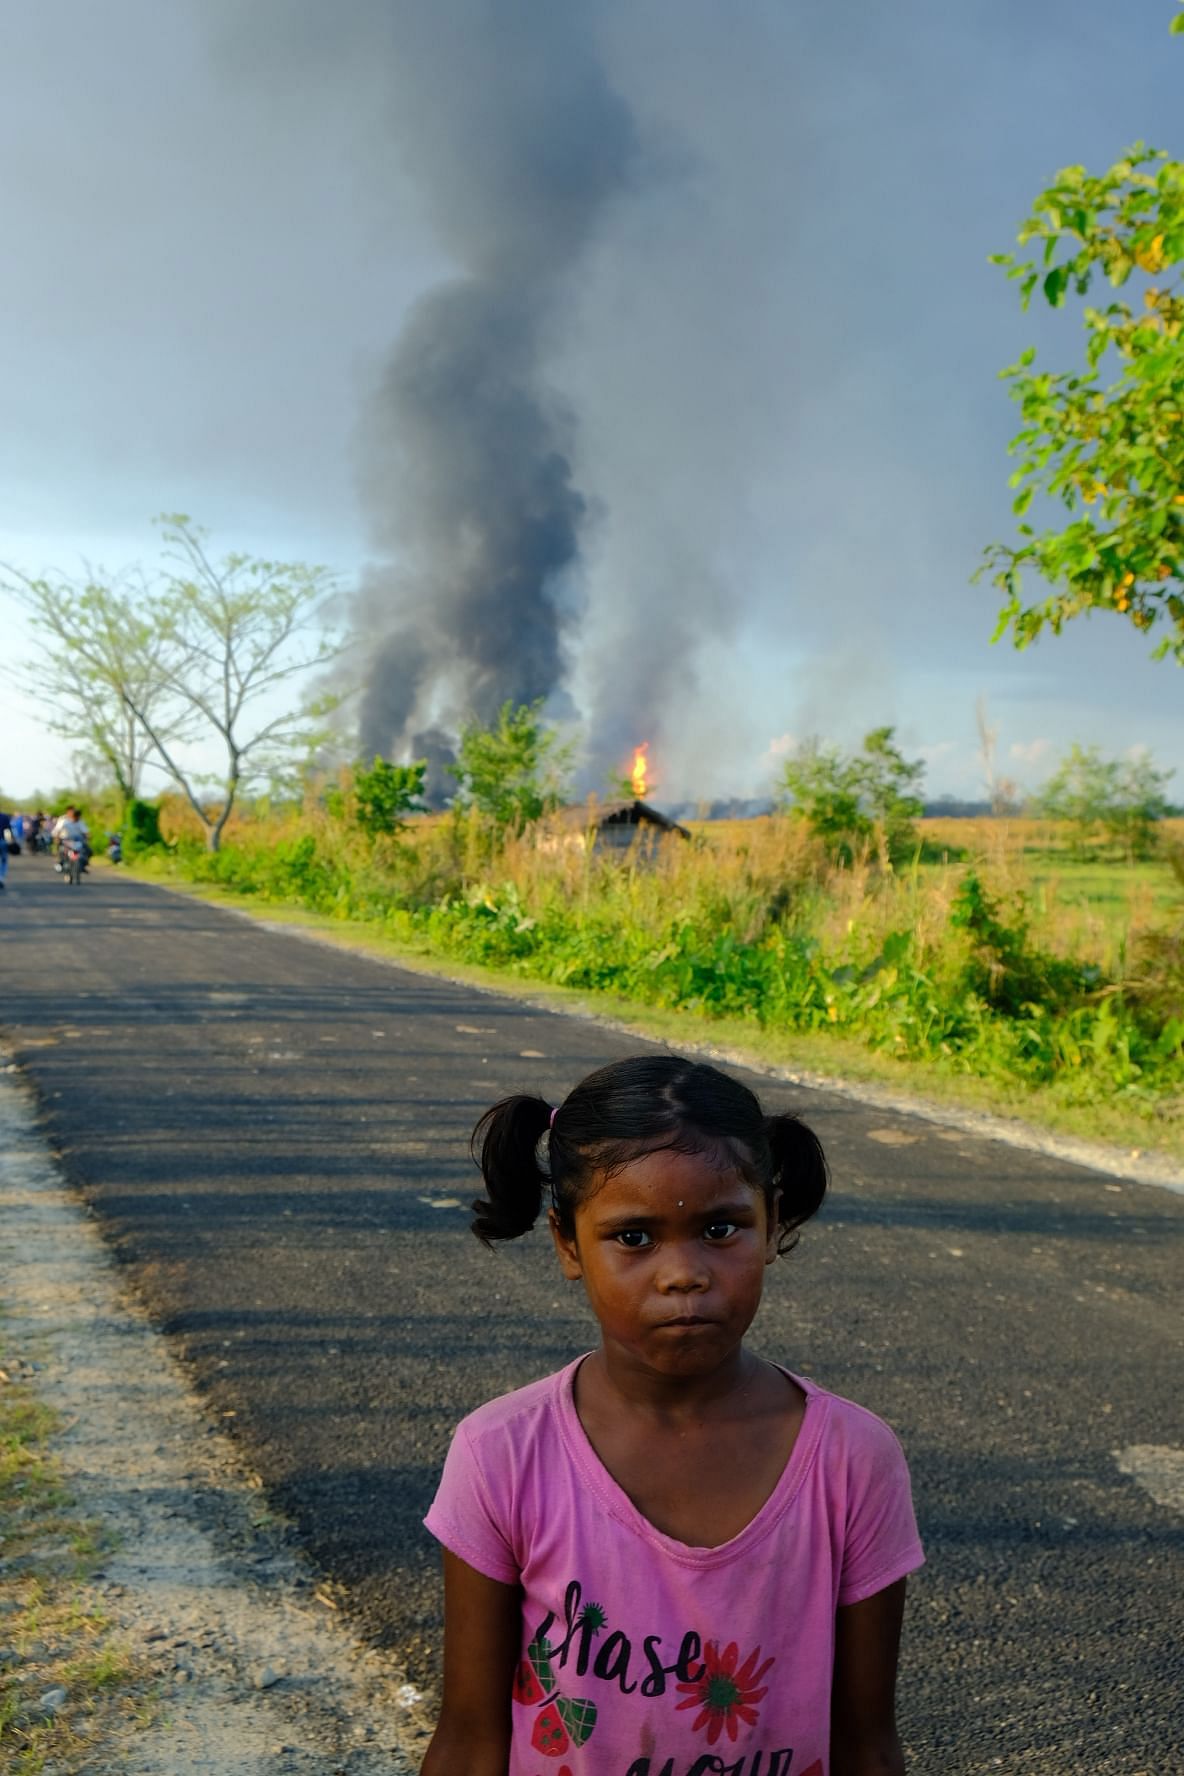 असम में 12 दिन पहले गैस लीक हुई थी, अब चार दिन से वहां आग जल रही है